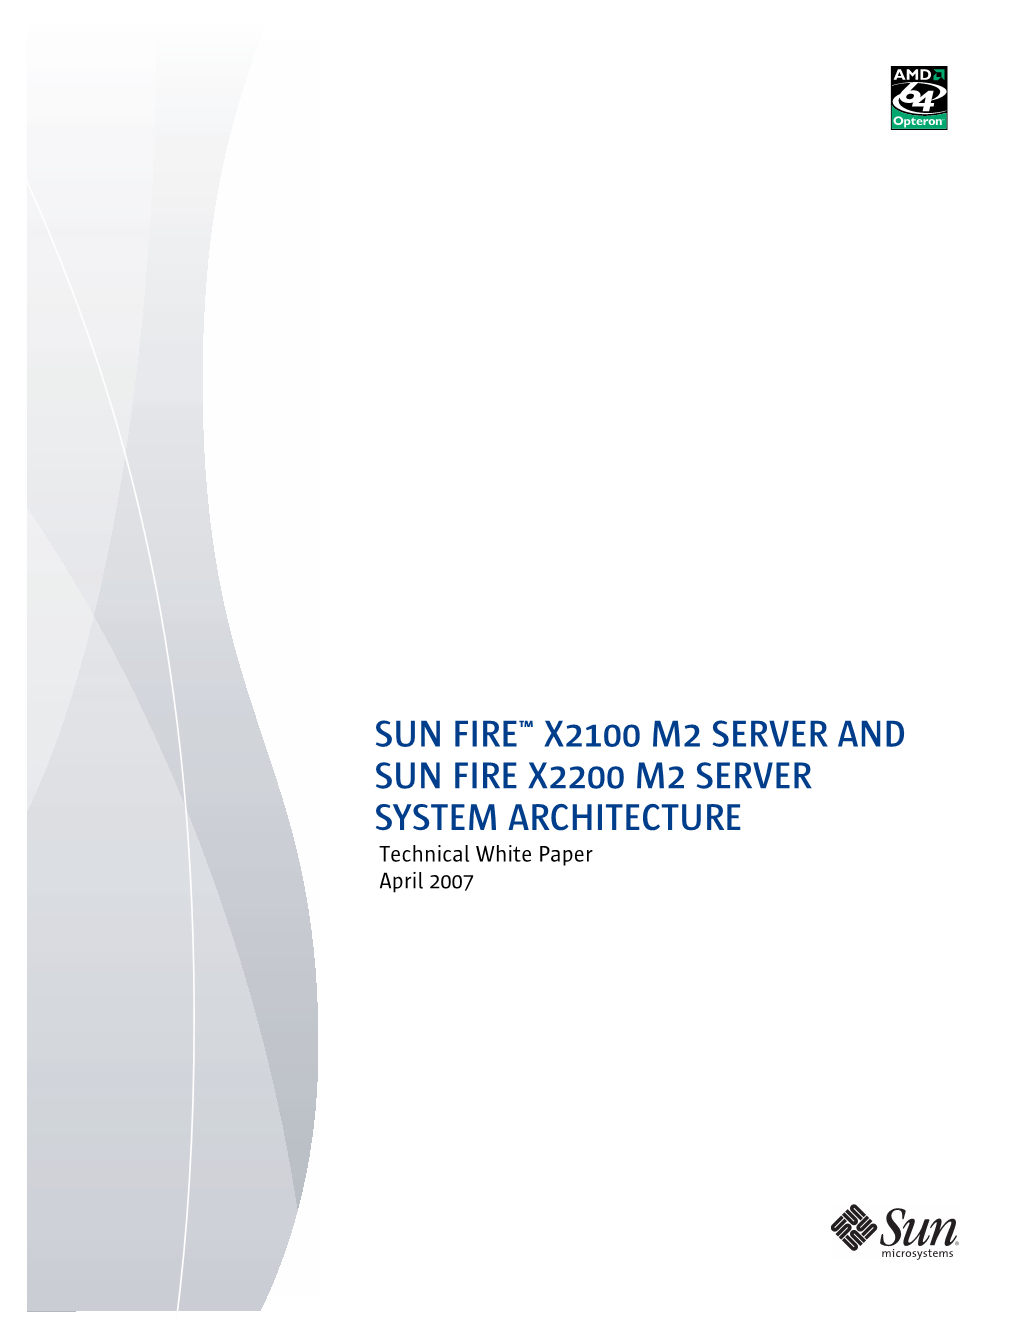 Sun Fire X2100 M2 and X2200 M2 Architecture White Paper